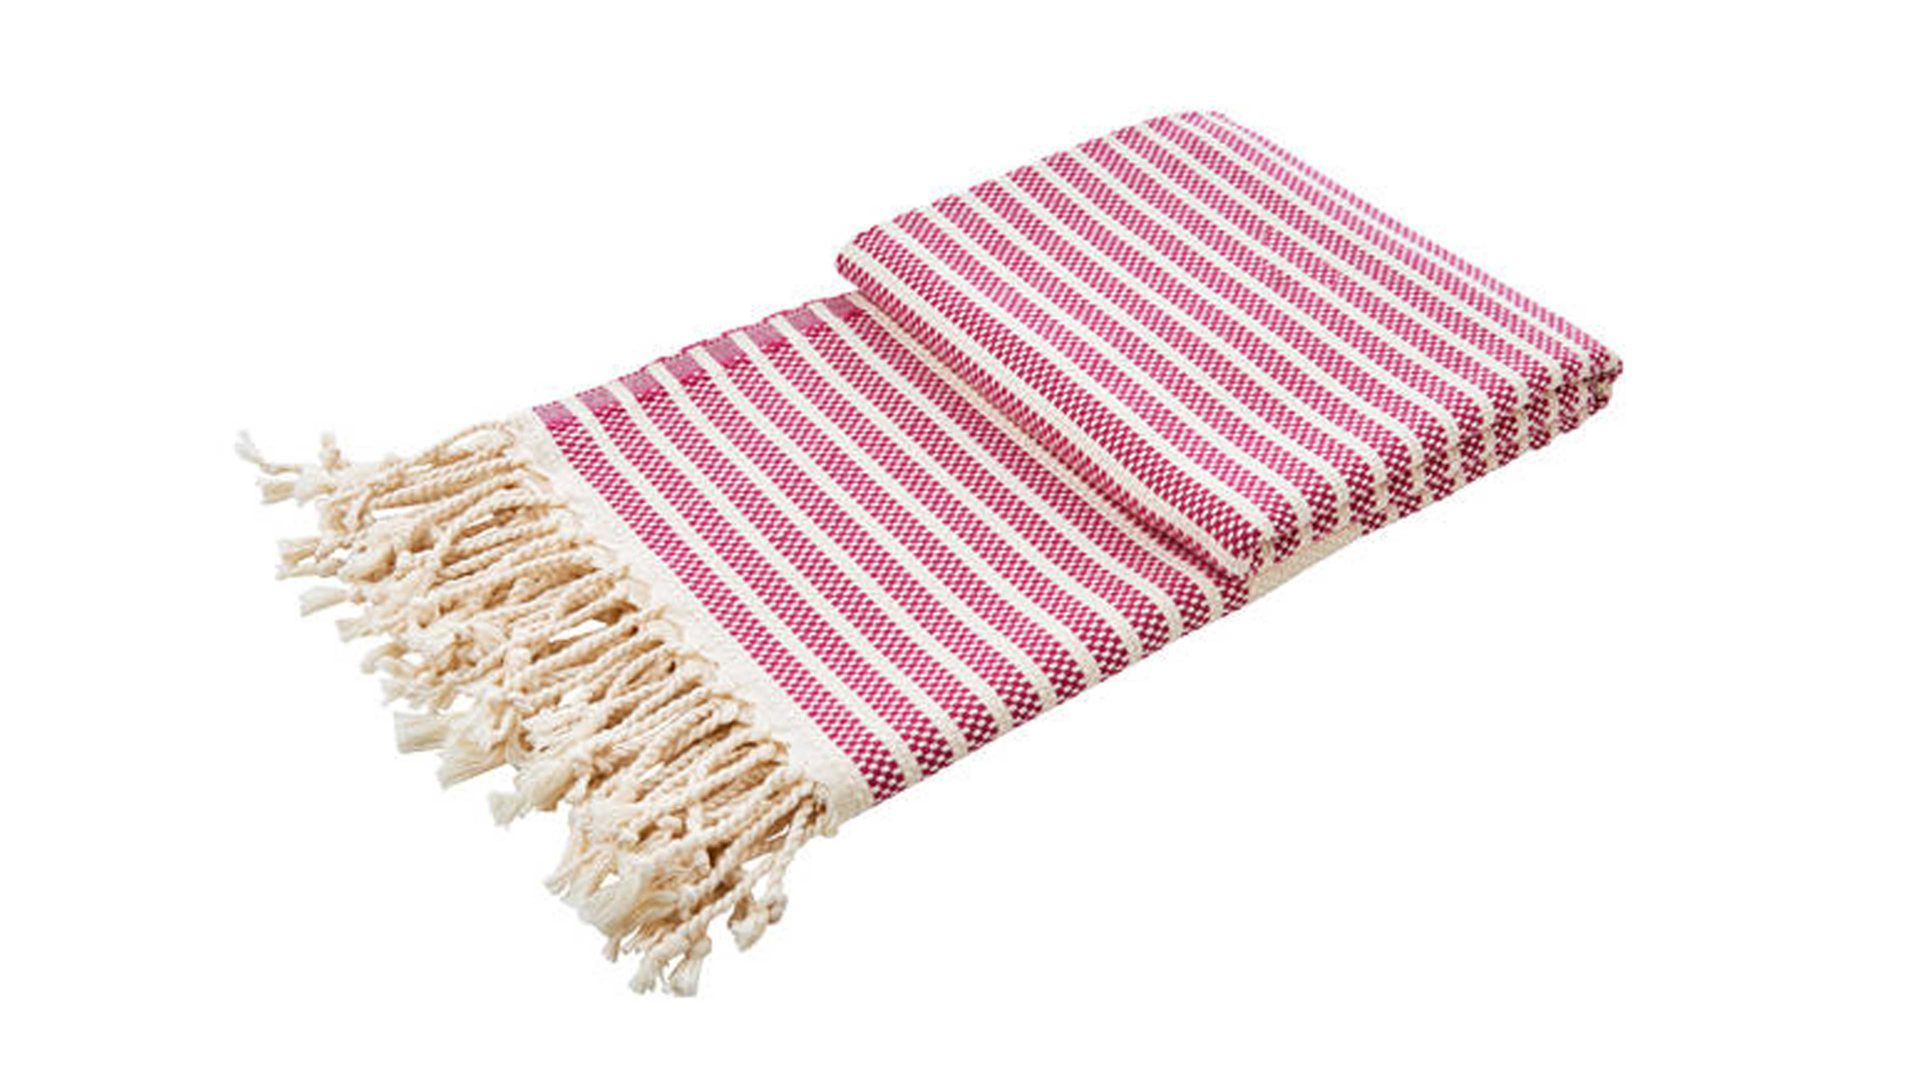 Wohndecke Interliving BEST BUDDYS! aus Naturfaser in Pink done.® Wohndecke Lounge Stripes Plus Pink & Weiß – ca. 100 x 180 cm